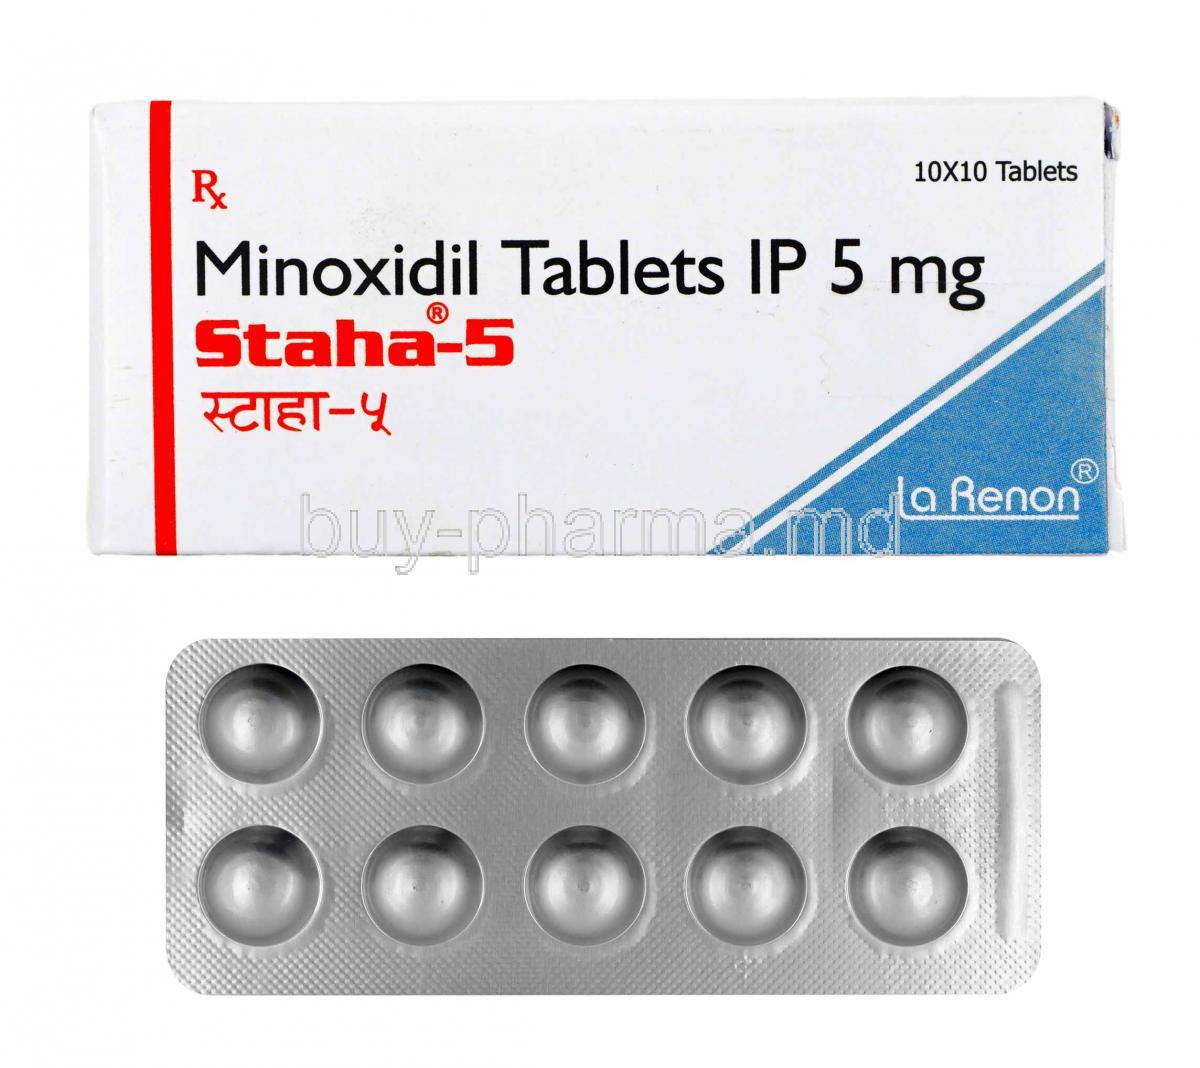 Staha, Minoxidil box and tablets